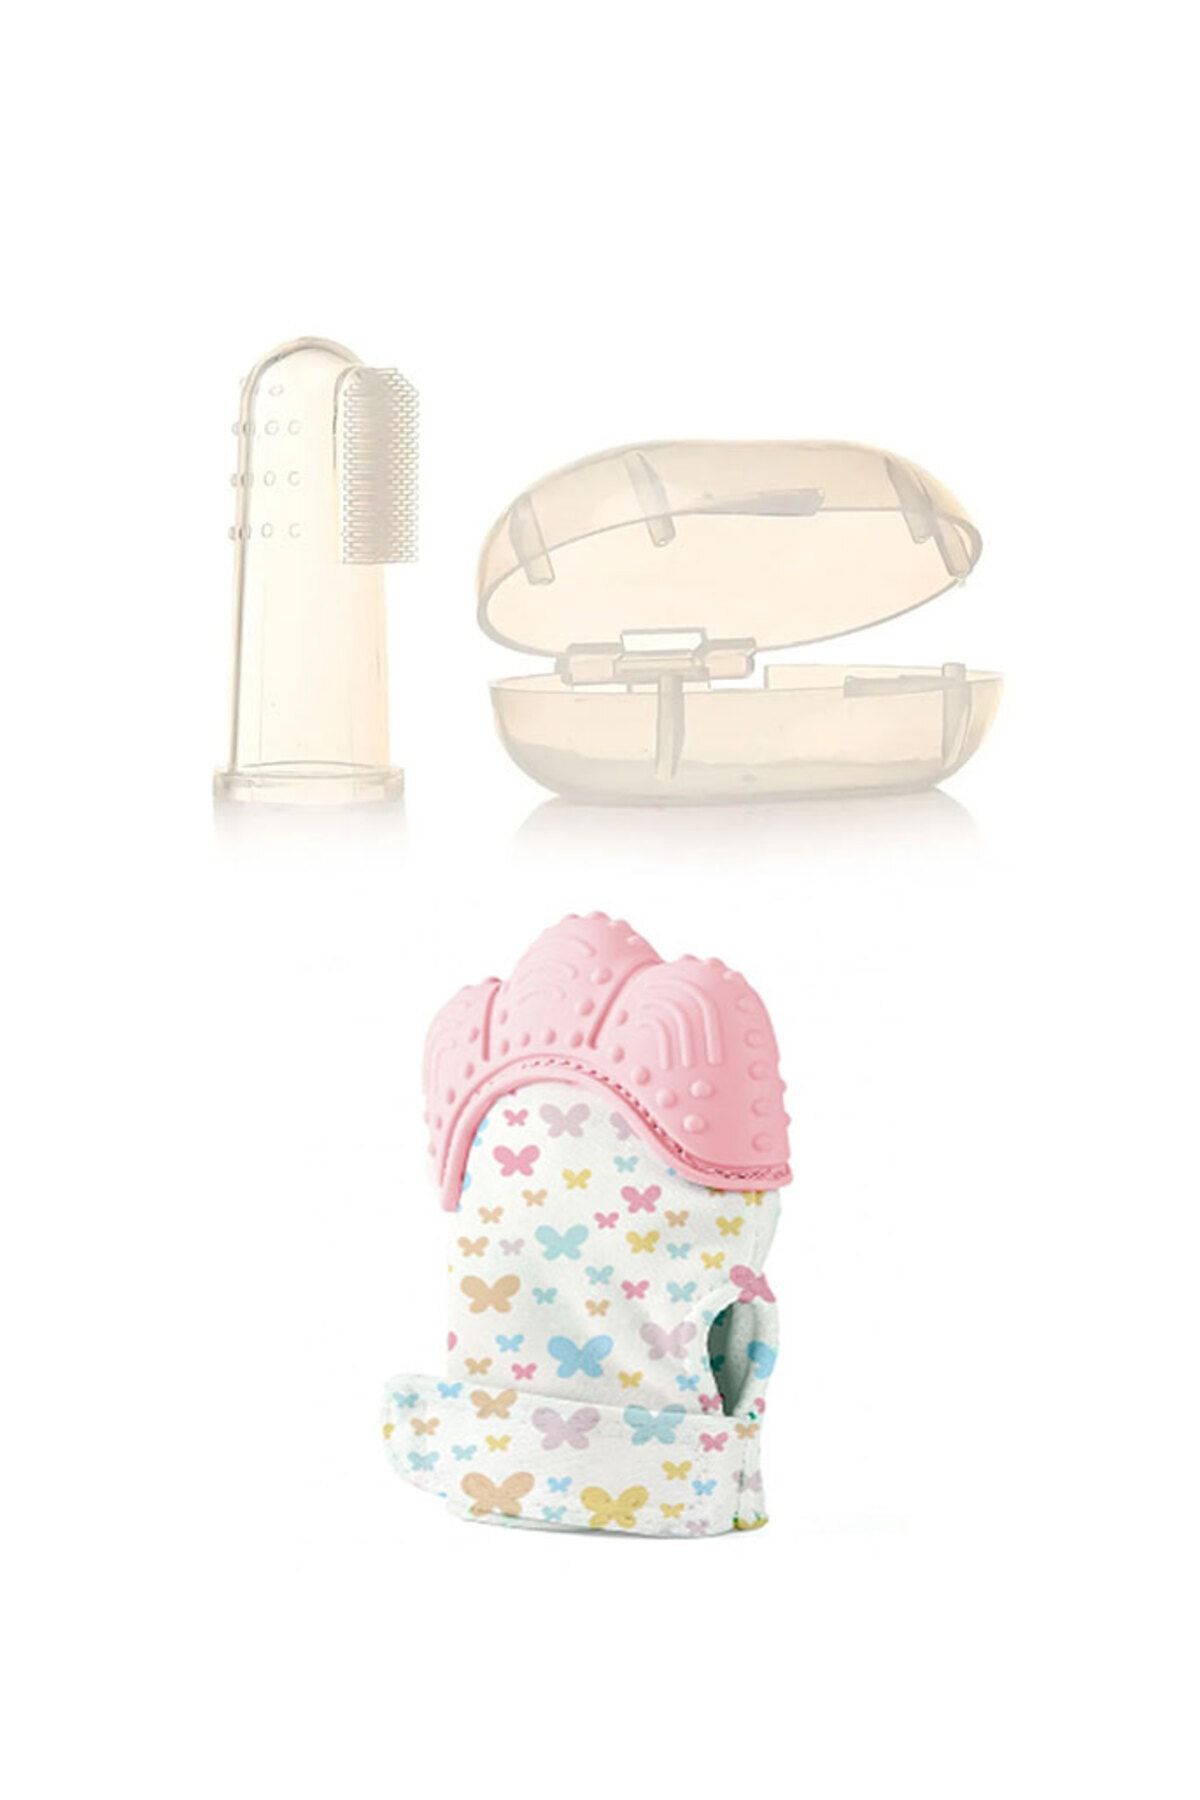 Babyjem Diş Kaşıyıcı Eldiven Pembe + Bebek Parmak Diş Fırçası - Saklama Kutulu